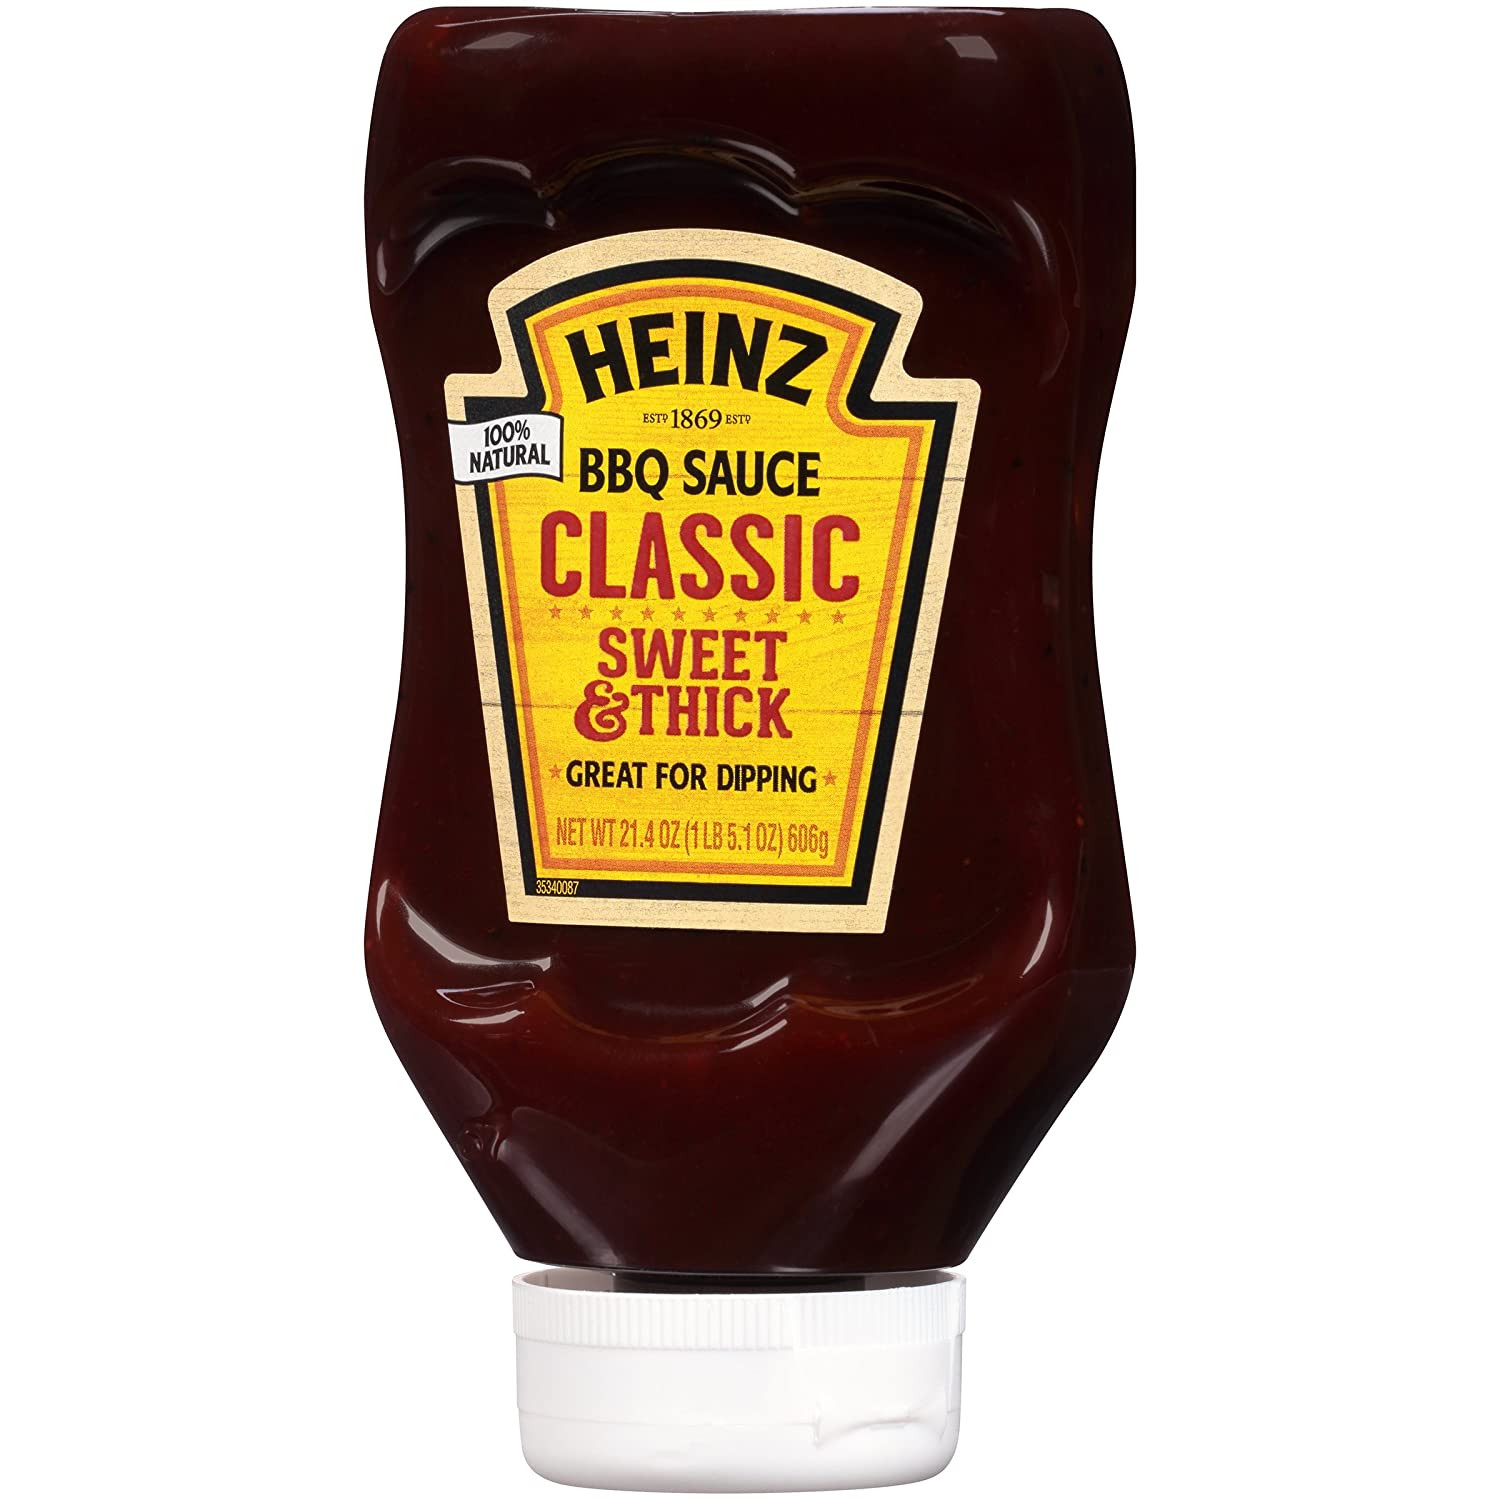 Heinz Bbq Sauces
 Is Heinz Classic Barbecue Sauce Gluten Free